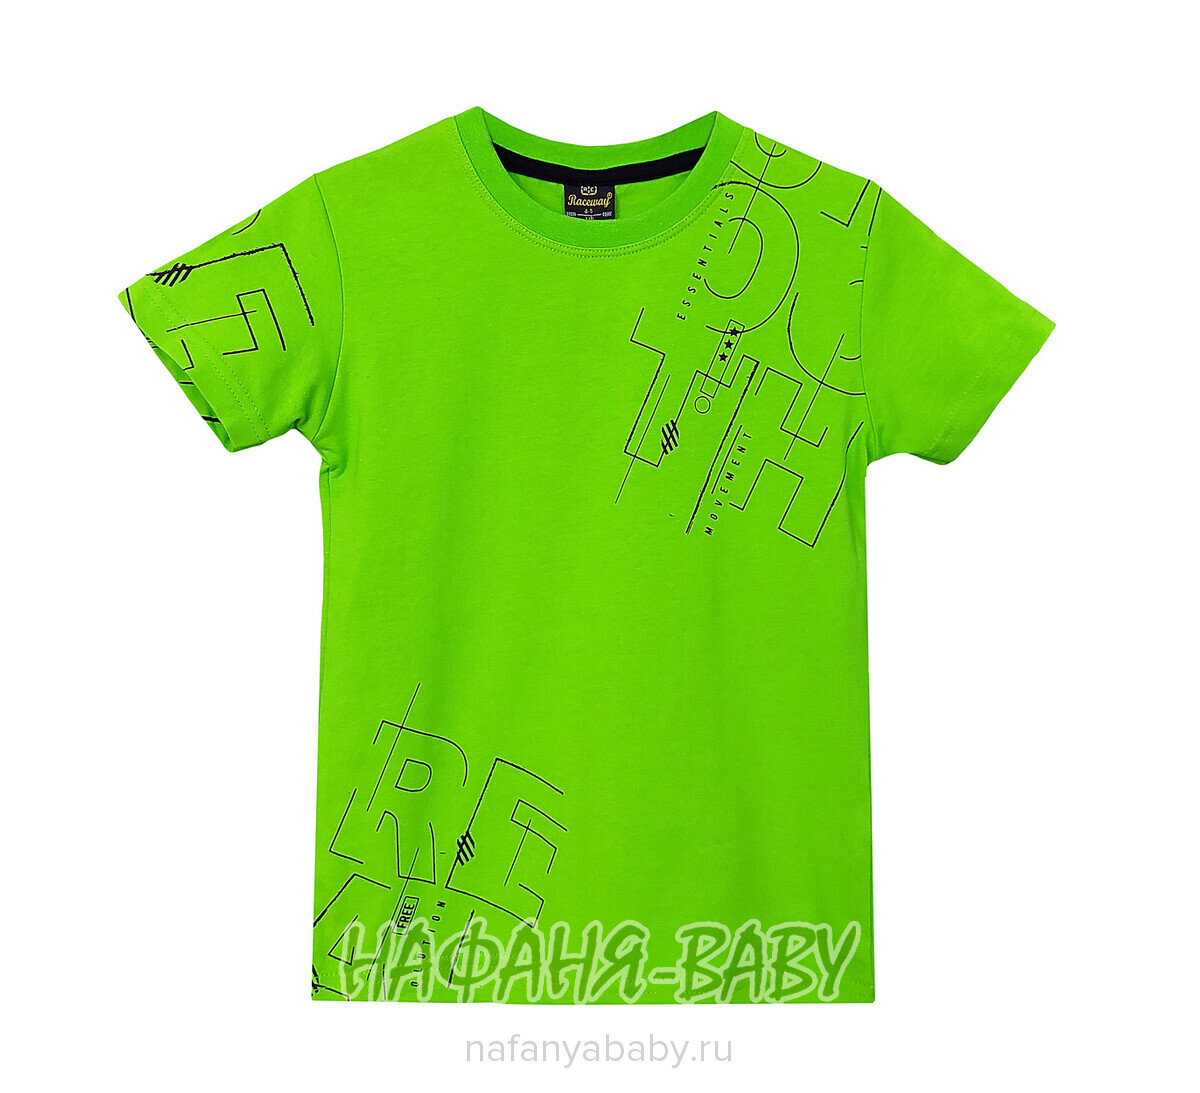 Подростковая футболка RCW арт. 5823, 10-14 лет, цвет зеленый, оптом Турция